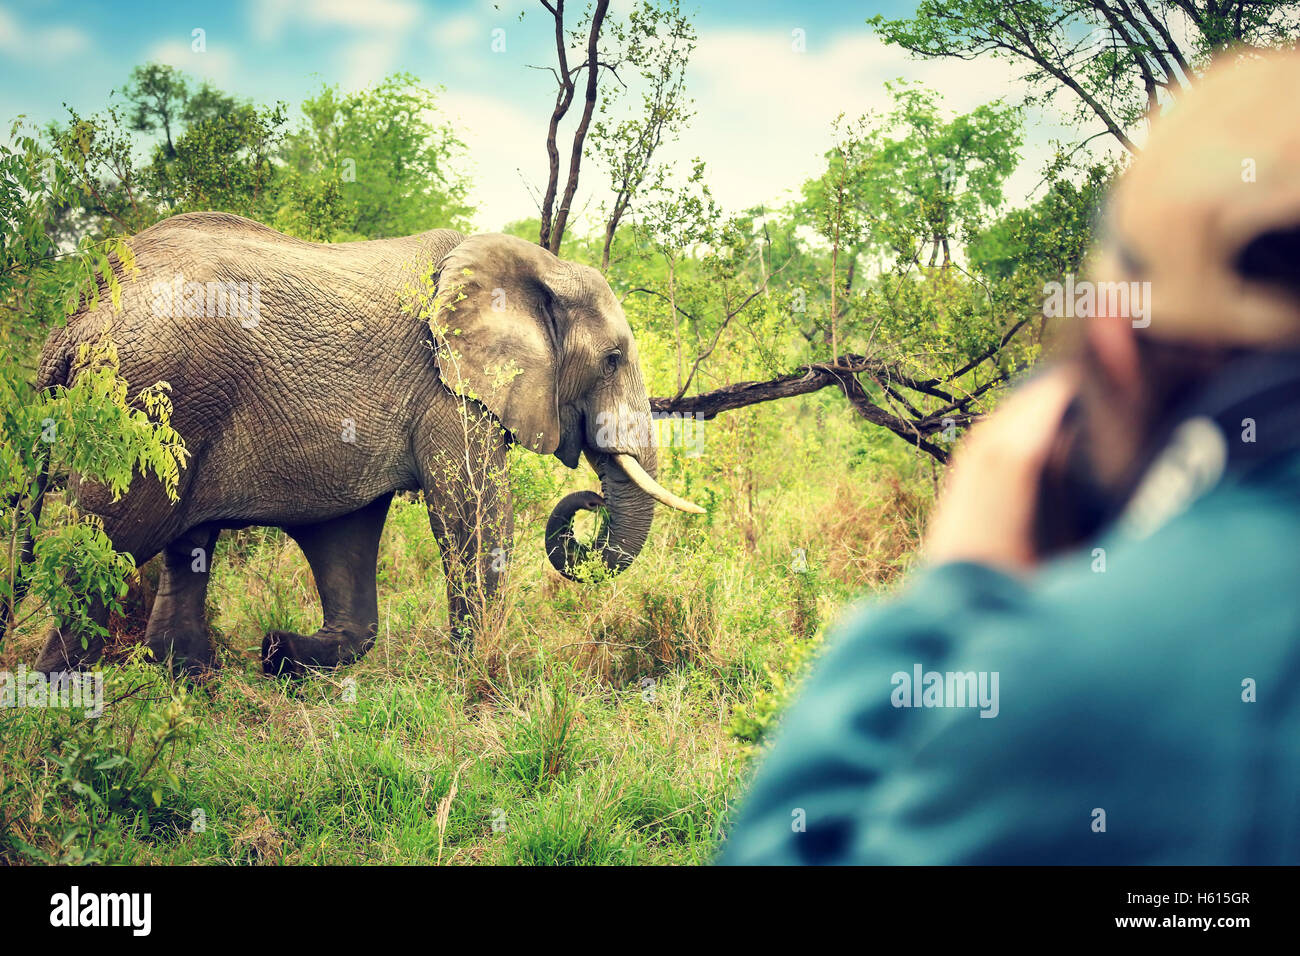 Fotógrafo tomar fotos de elefantes africanos, un animal salvaje, safari juego duro, los viajes y el turismo ecológico Foto de stock